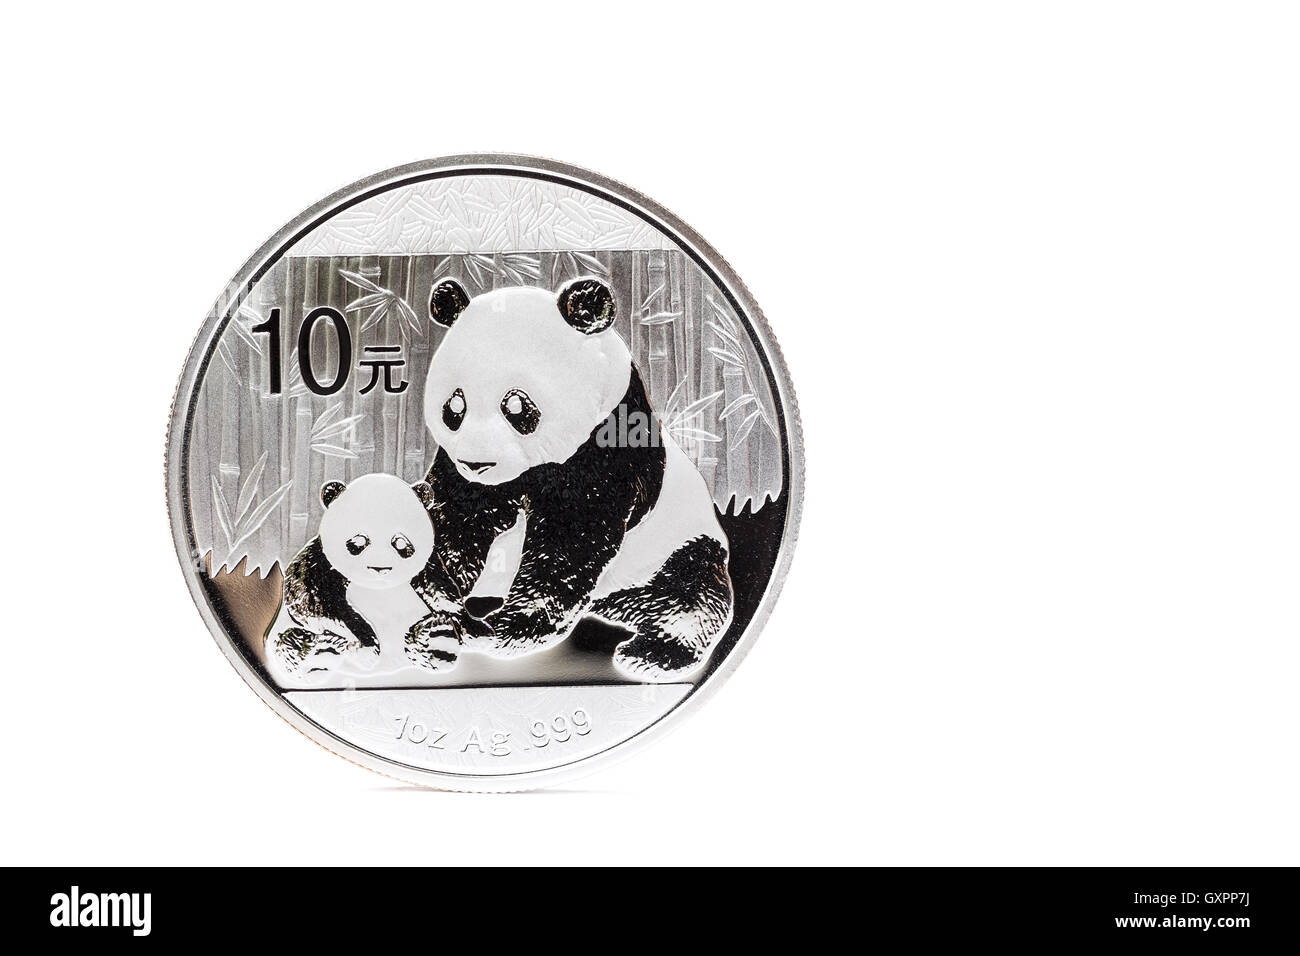 Pièce en argent avec la mère et l'enfant panda isolé sur fond blanc Banque D'Images